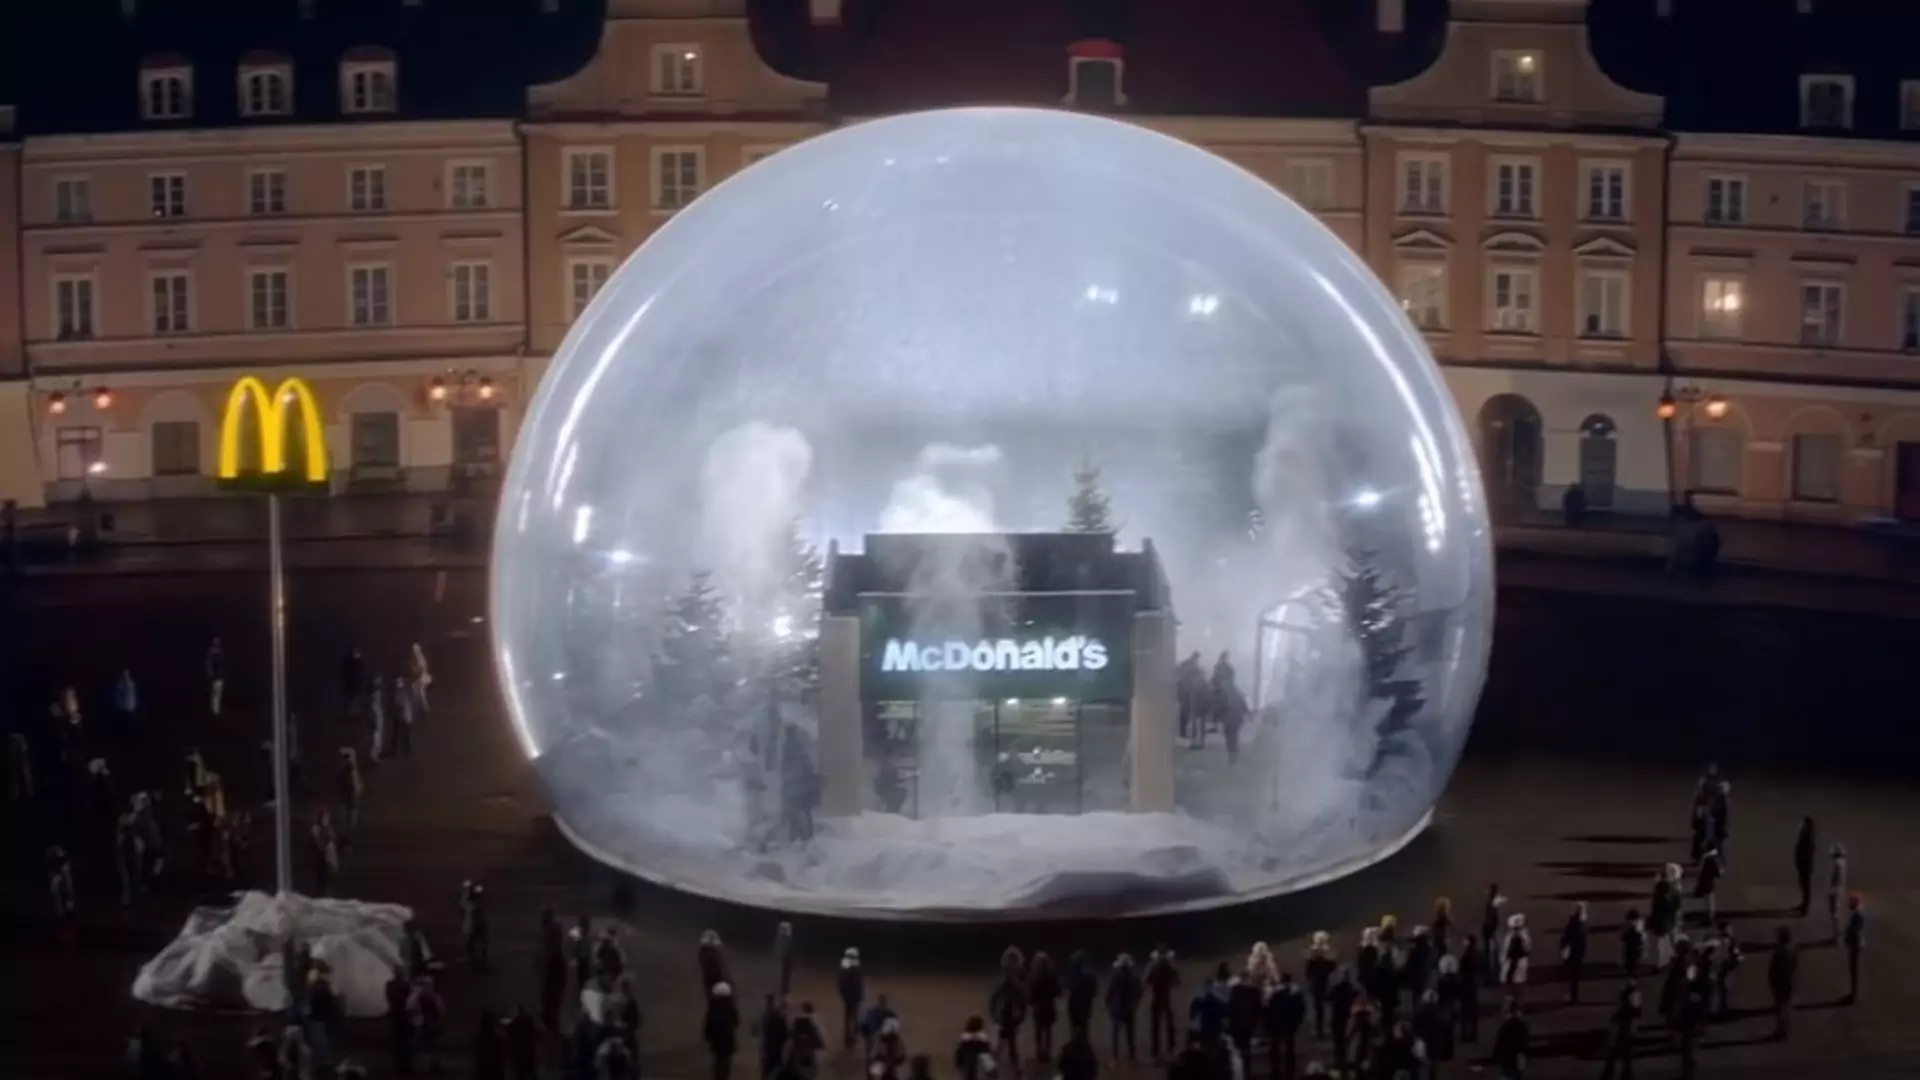 McDonald's postawił w Lublinie kulę śniegową z mini-restauracją w środku. Do sieci trafiło wideo z akcji